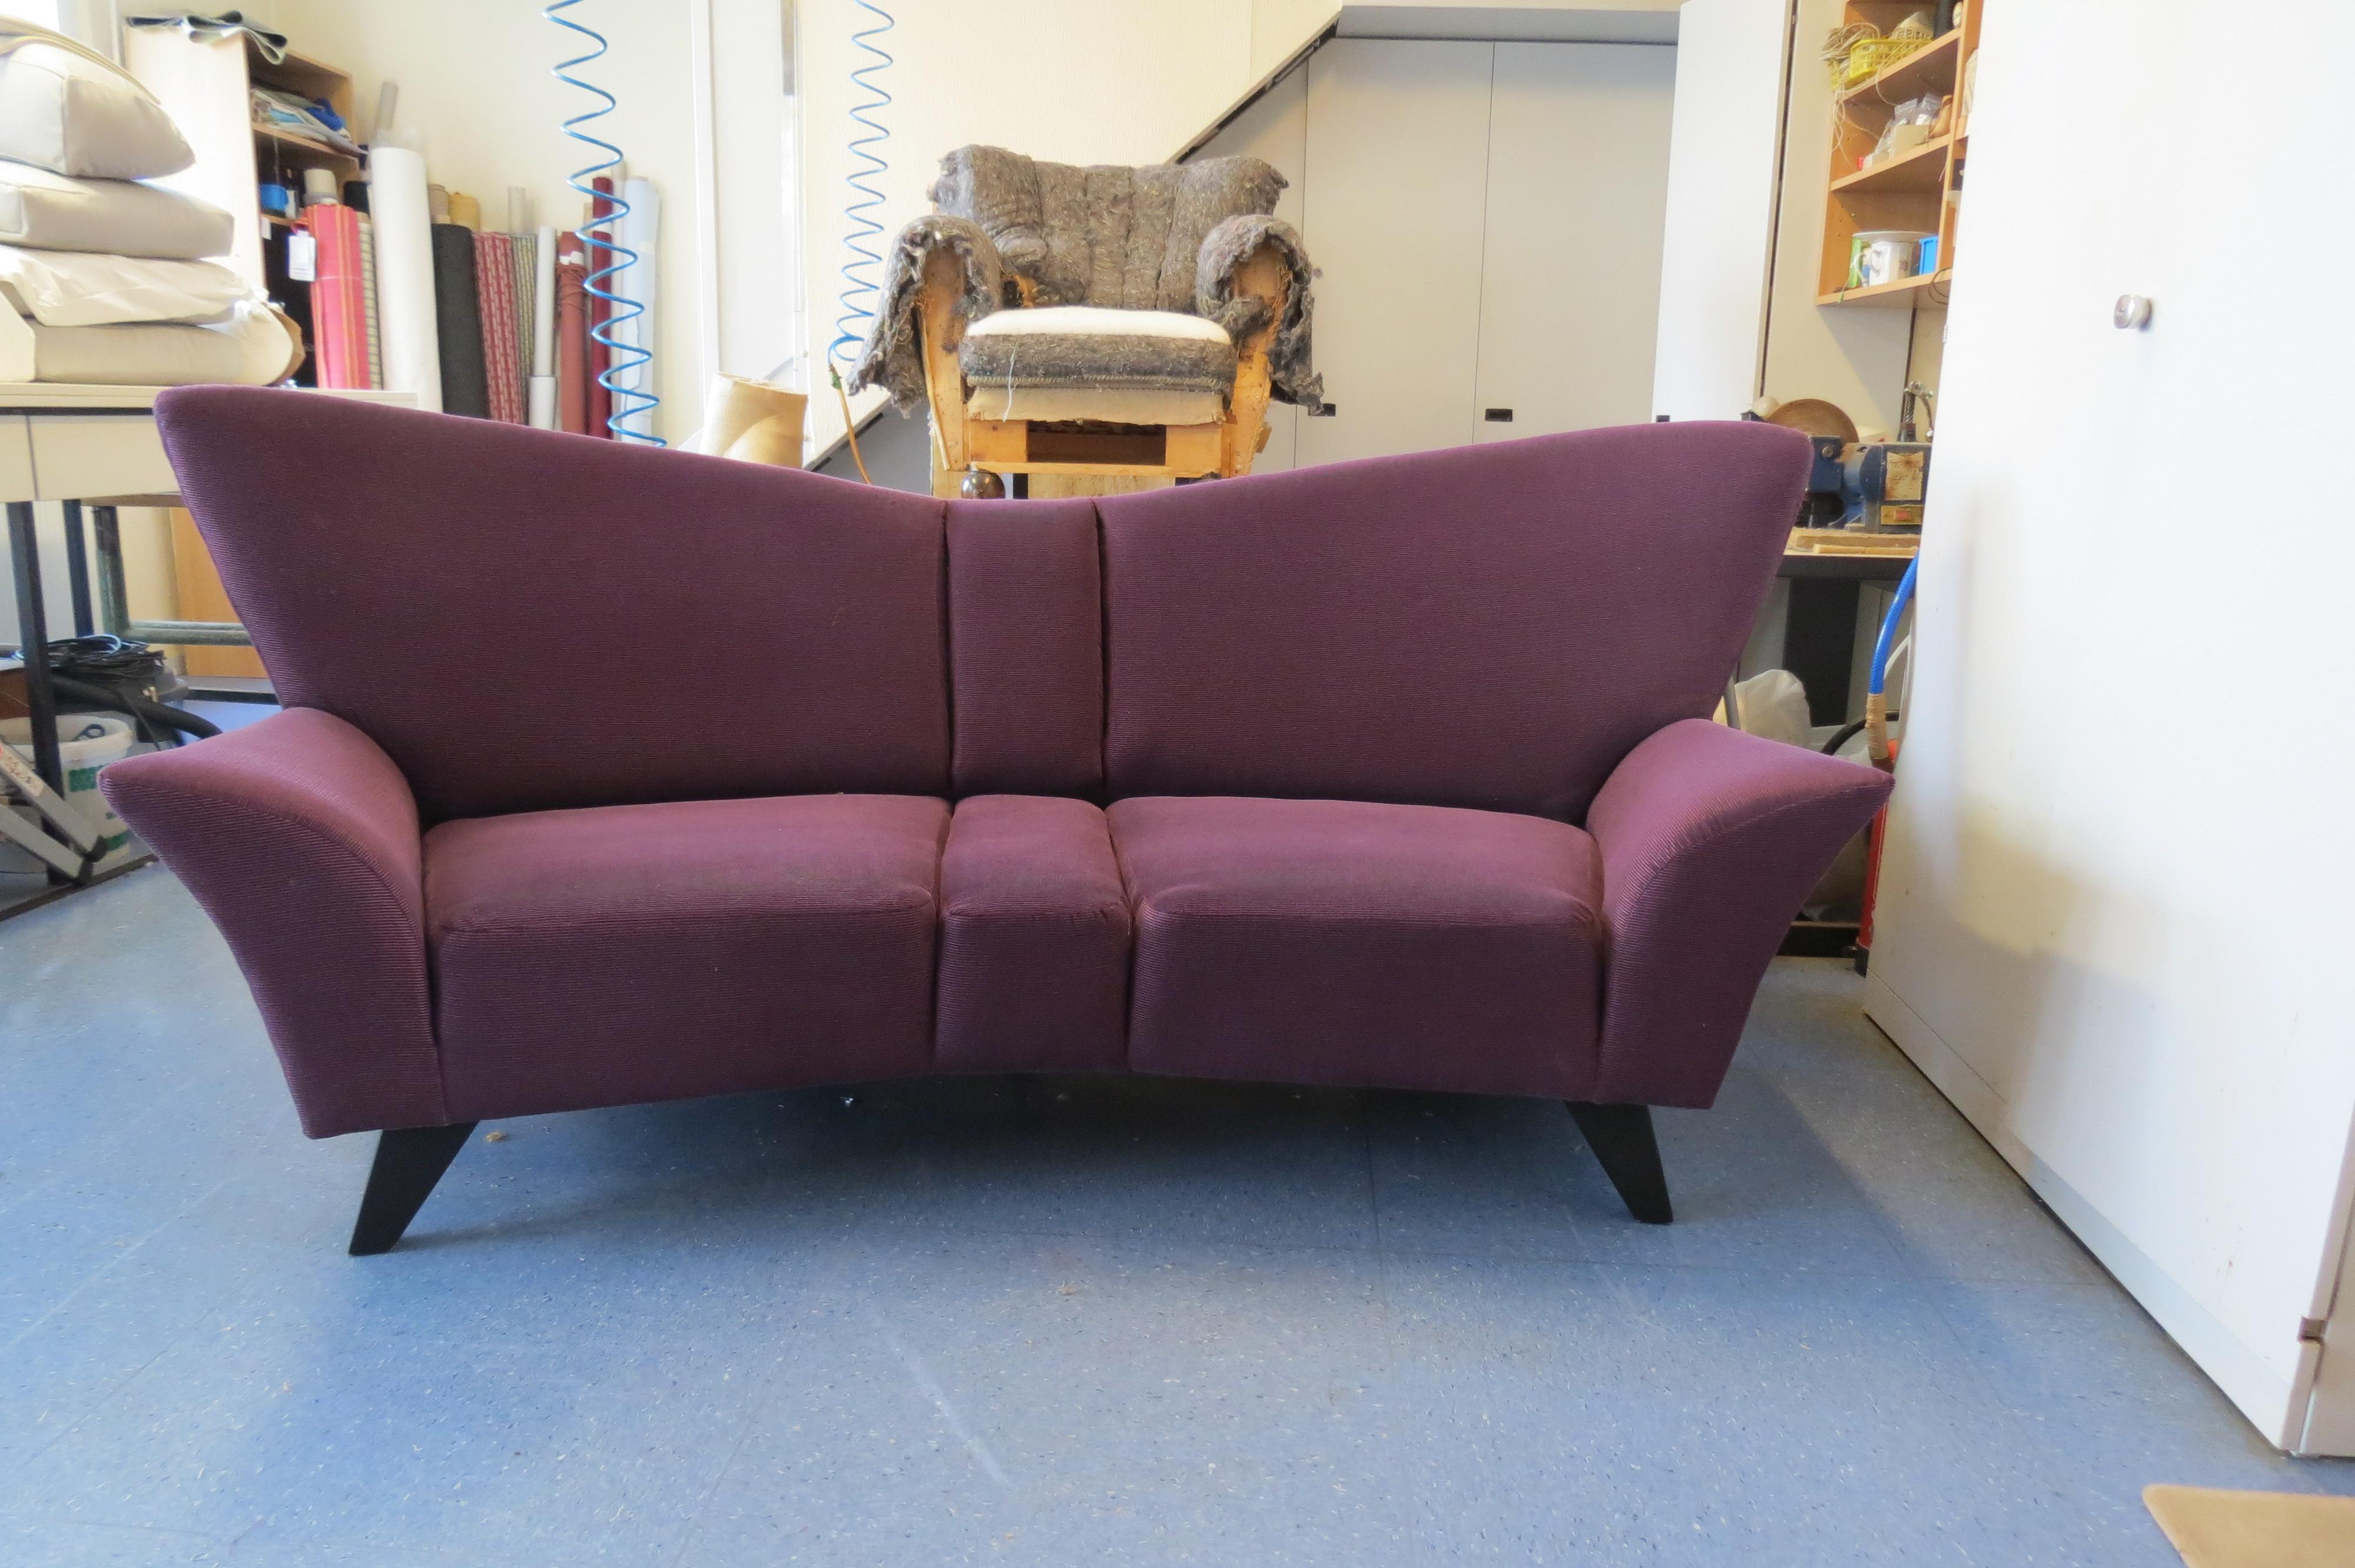 Polsterarbeiten Sofa #retro ©Raumausstattung Ebert GmbH